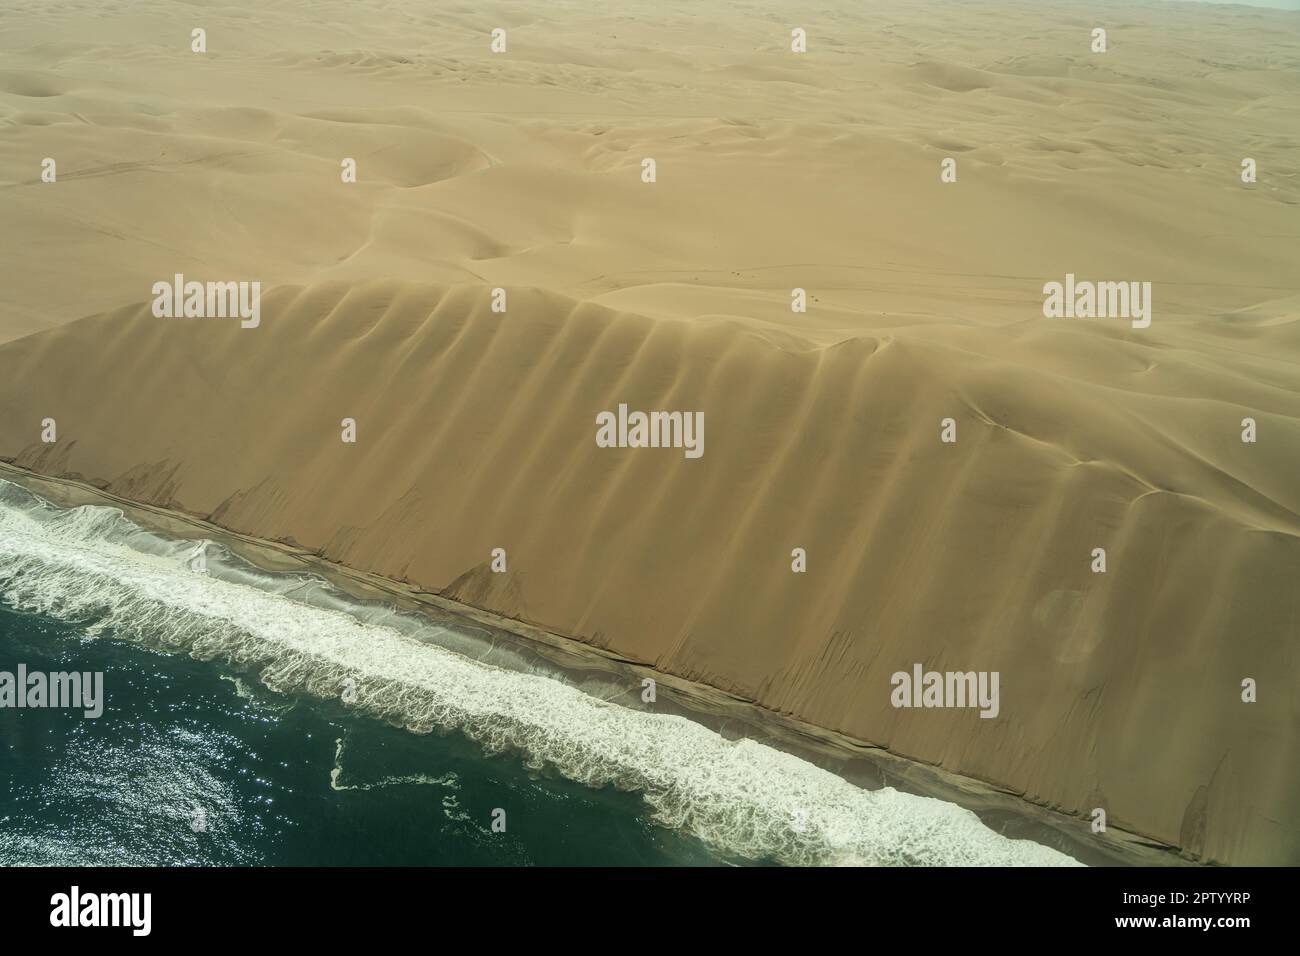 Photographie aérienne de vol au-dessus des dunes qui rencontrent l'océan Atlantique Namibie Banque D'Images